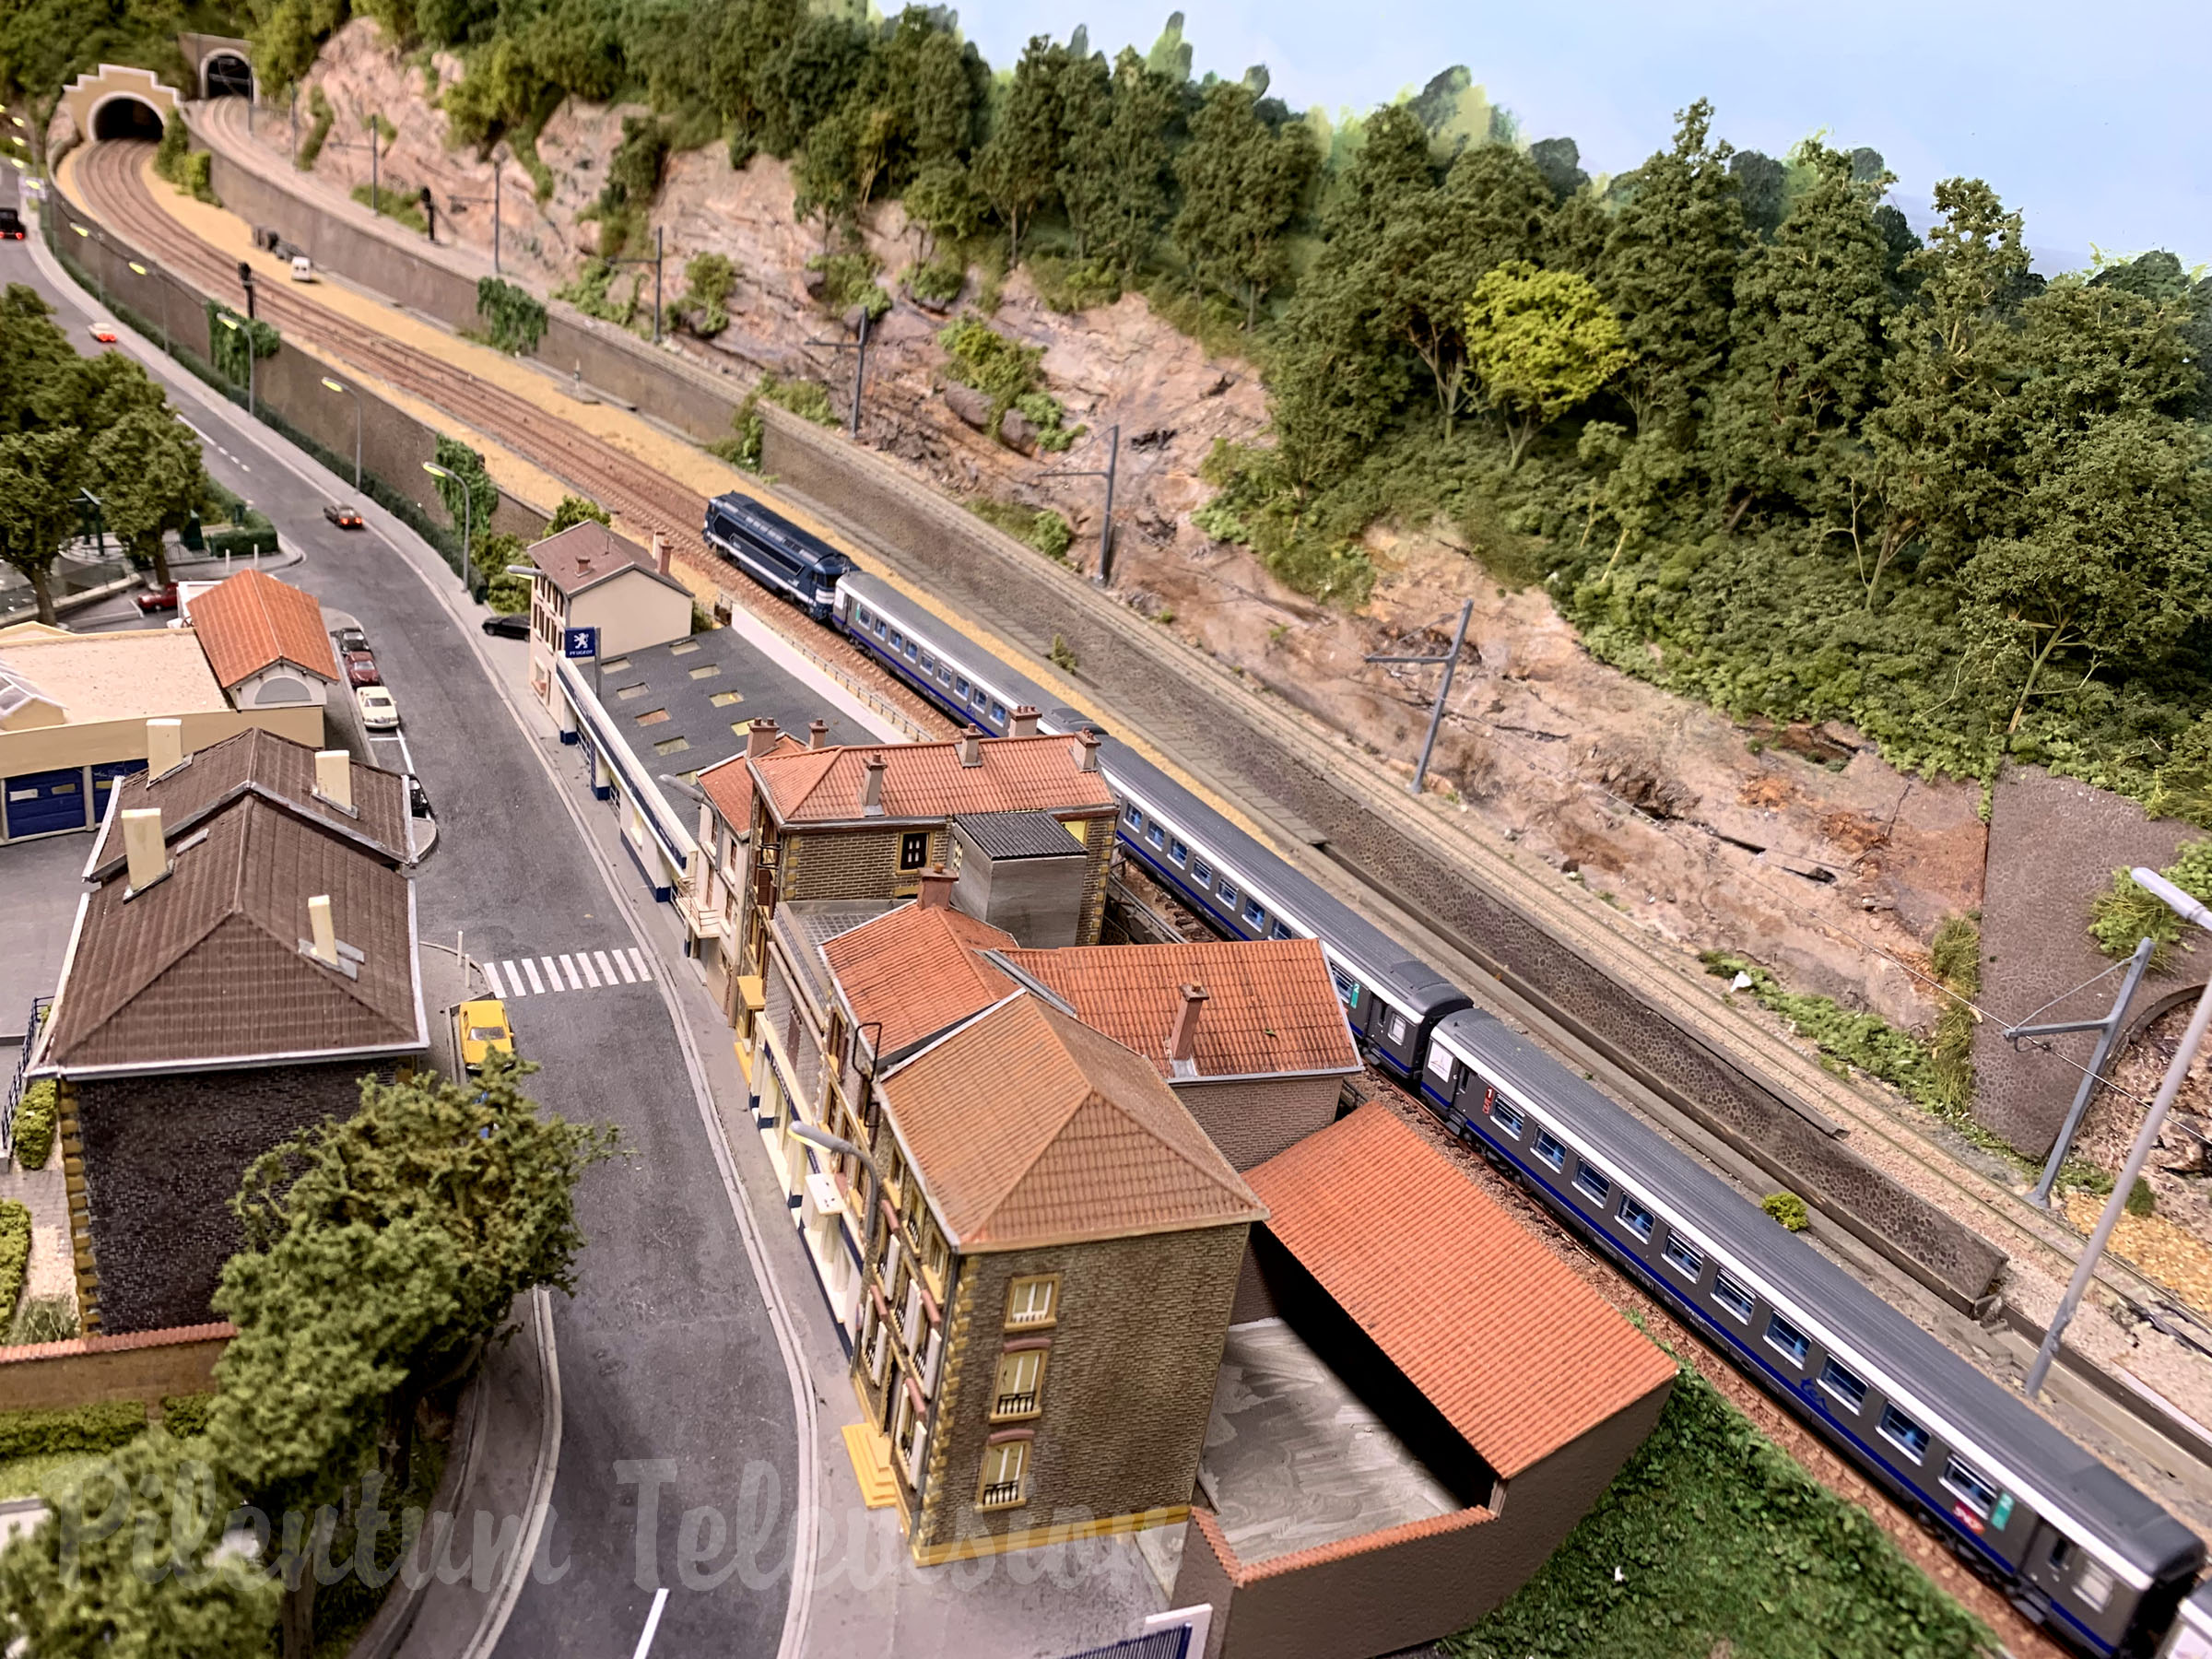 Ranskalainen pienoisrautatie mittakaavassa 1:160 ja SNCF:n junia L'Arbreslen rautatieasemalla